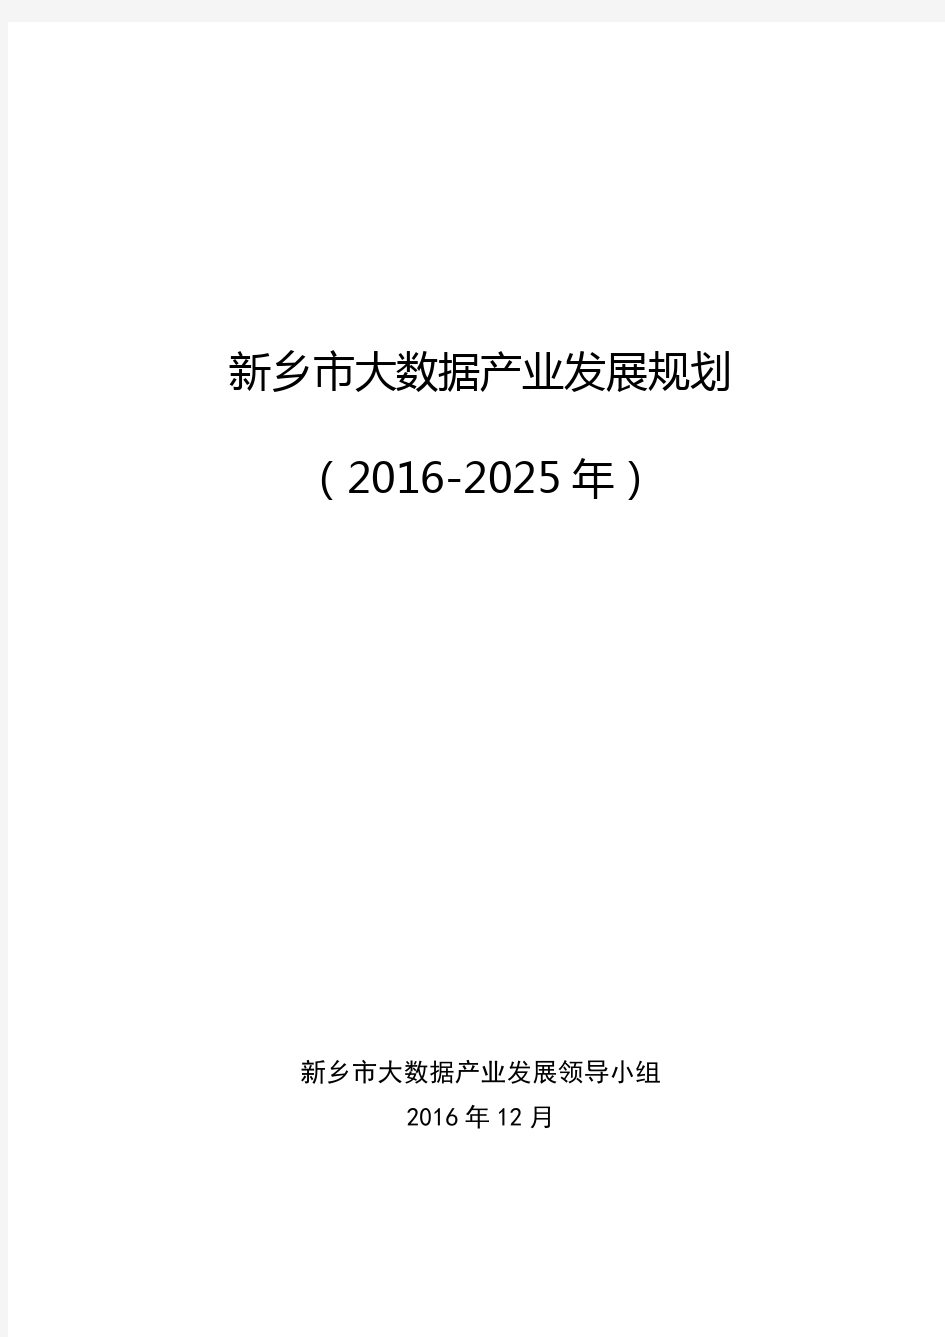 新乡市大数据产业发展规划(2016-2025年)